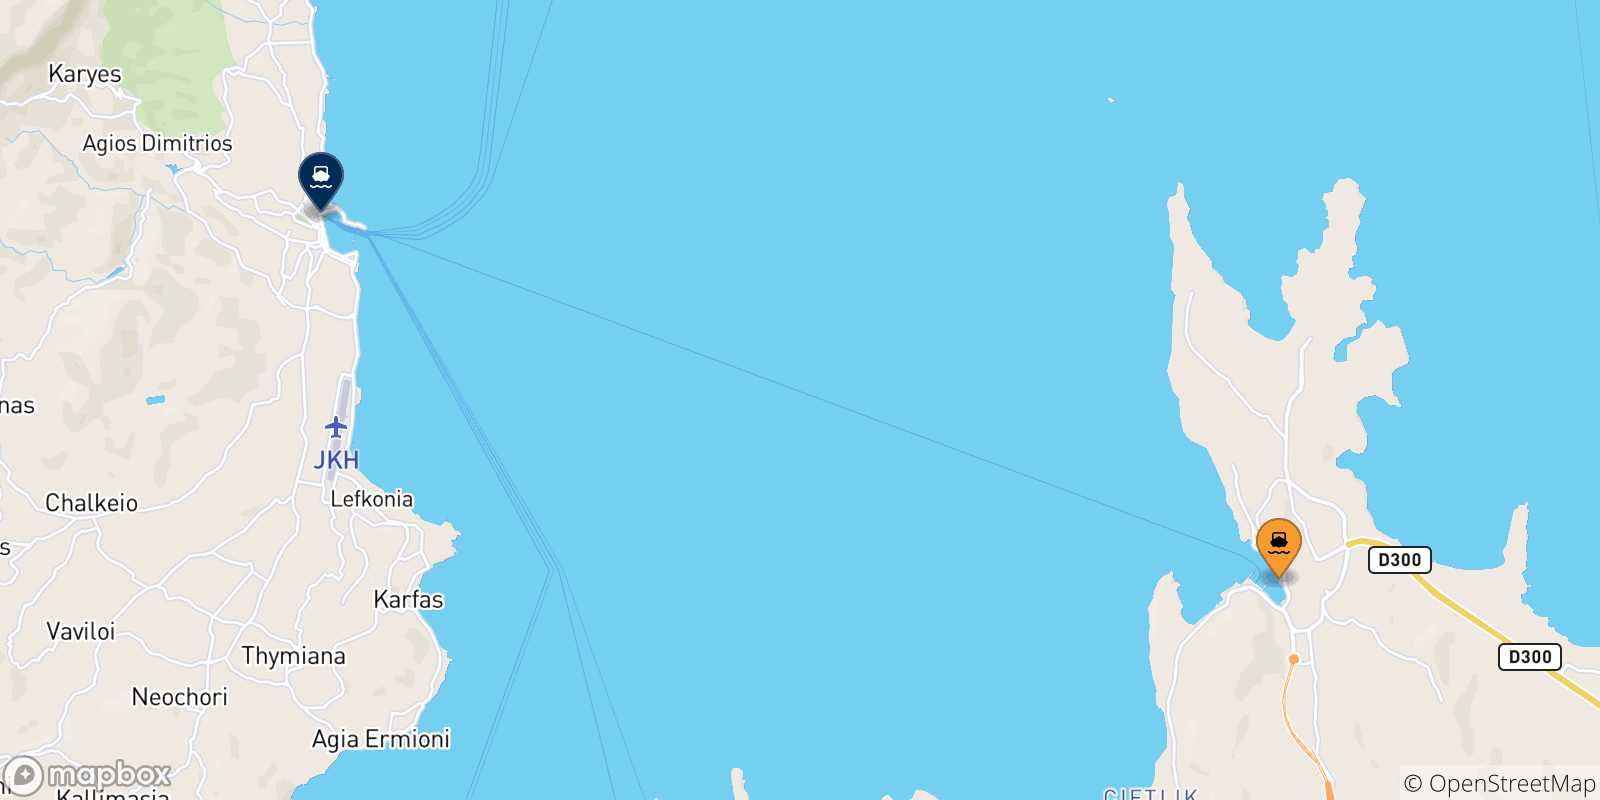 Mappa delle possibili rotte tra la Turchia e Chios